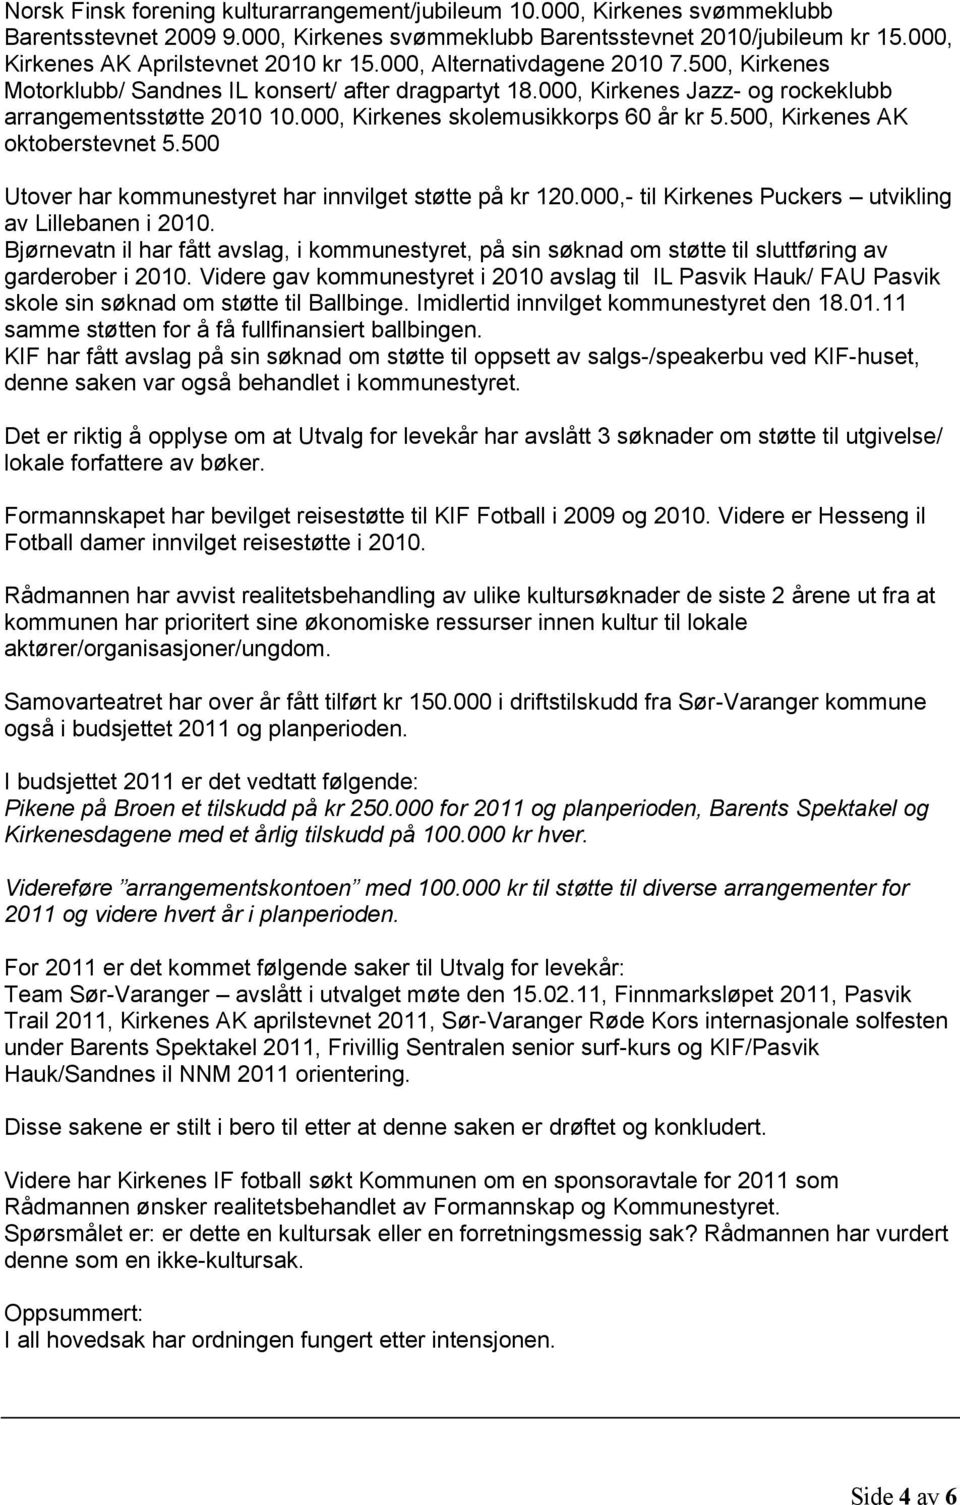 000, Kirkenes skolemusikkorps 60 år kr 5.500, Kirkenes AK oktoberstevnet 5.500 Utover har kommunestyret har innvilget støtte på kr 120.000,- til Kirkenes Puckers utvikling av Lillebanen i 2010.